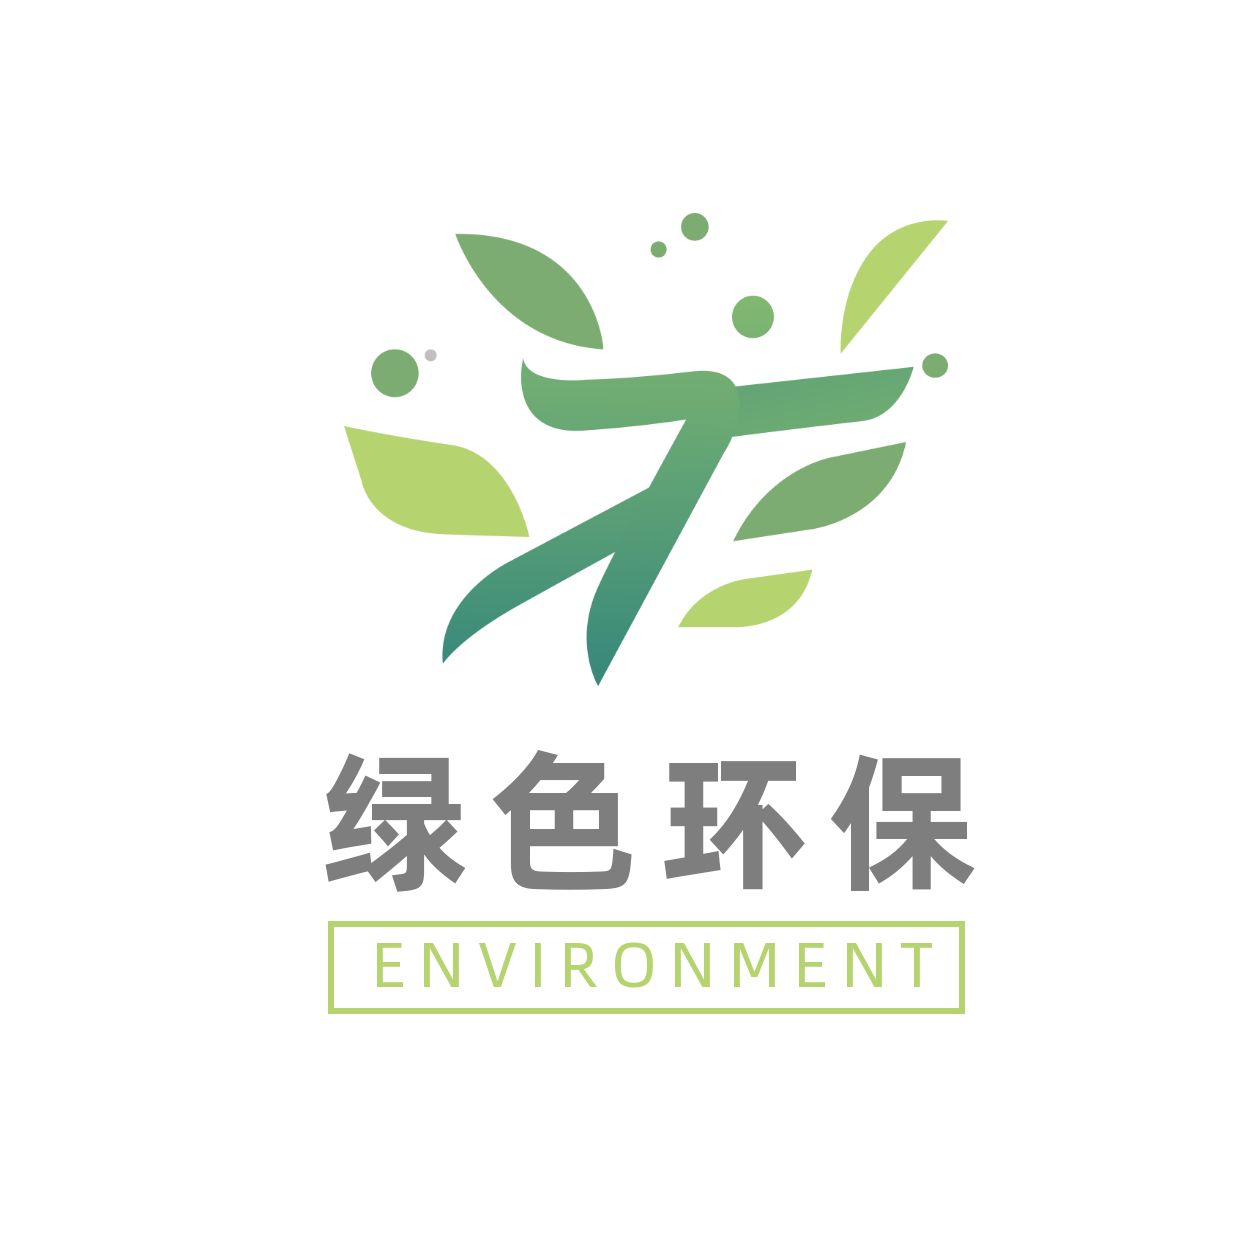 公益环保保护自然logo 3